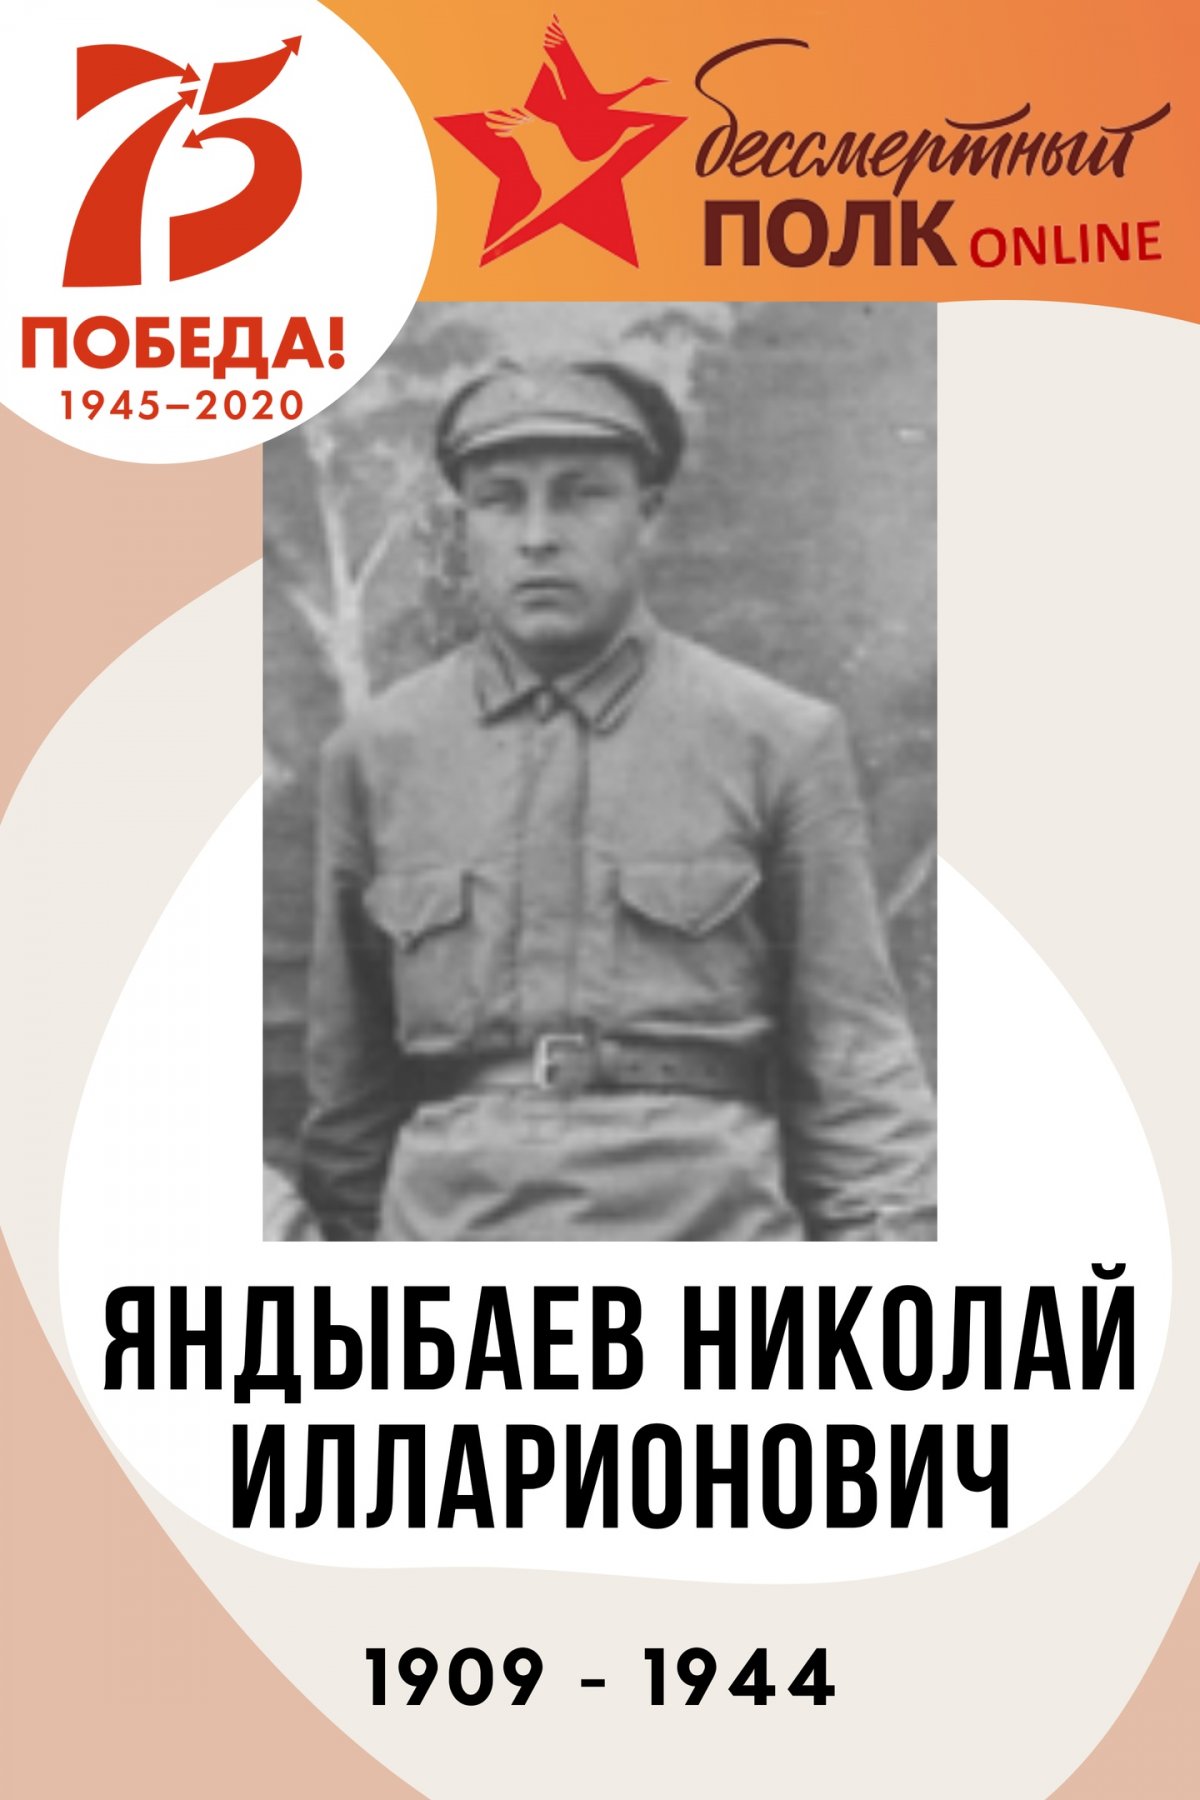 📢 Начинаем публиковать посты о героях Великой Отечественной войны!